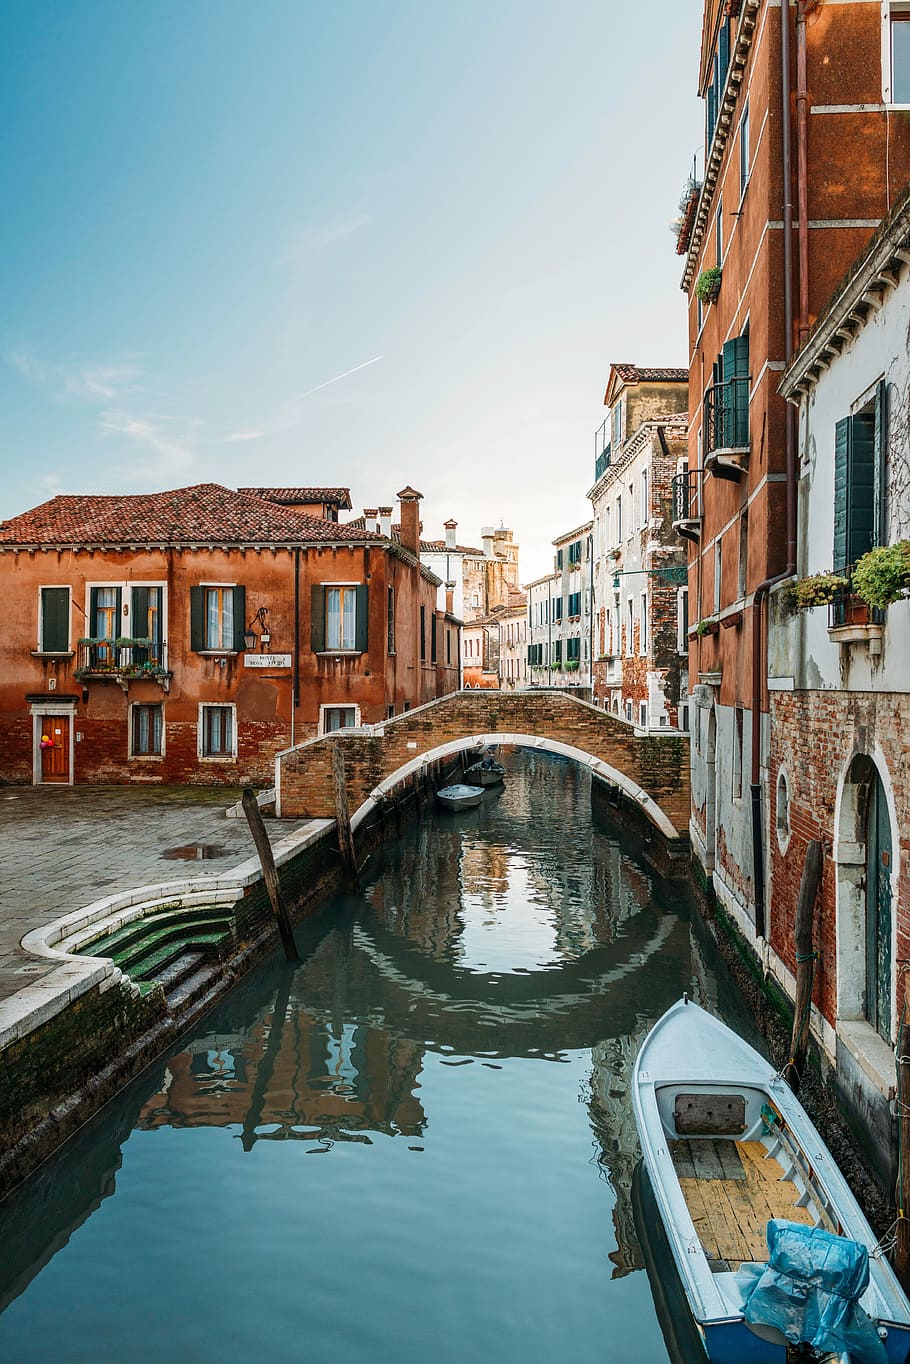 Blanco, barco, grand, canal venecia italia, gran canal Venecia, Venecia Italia, canal, venecia - italia, italia, arquitectura